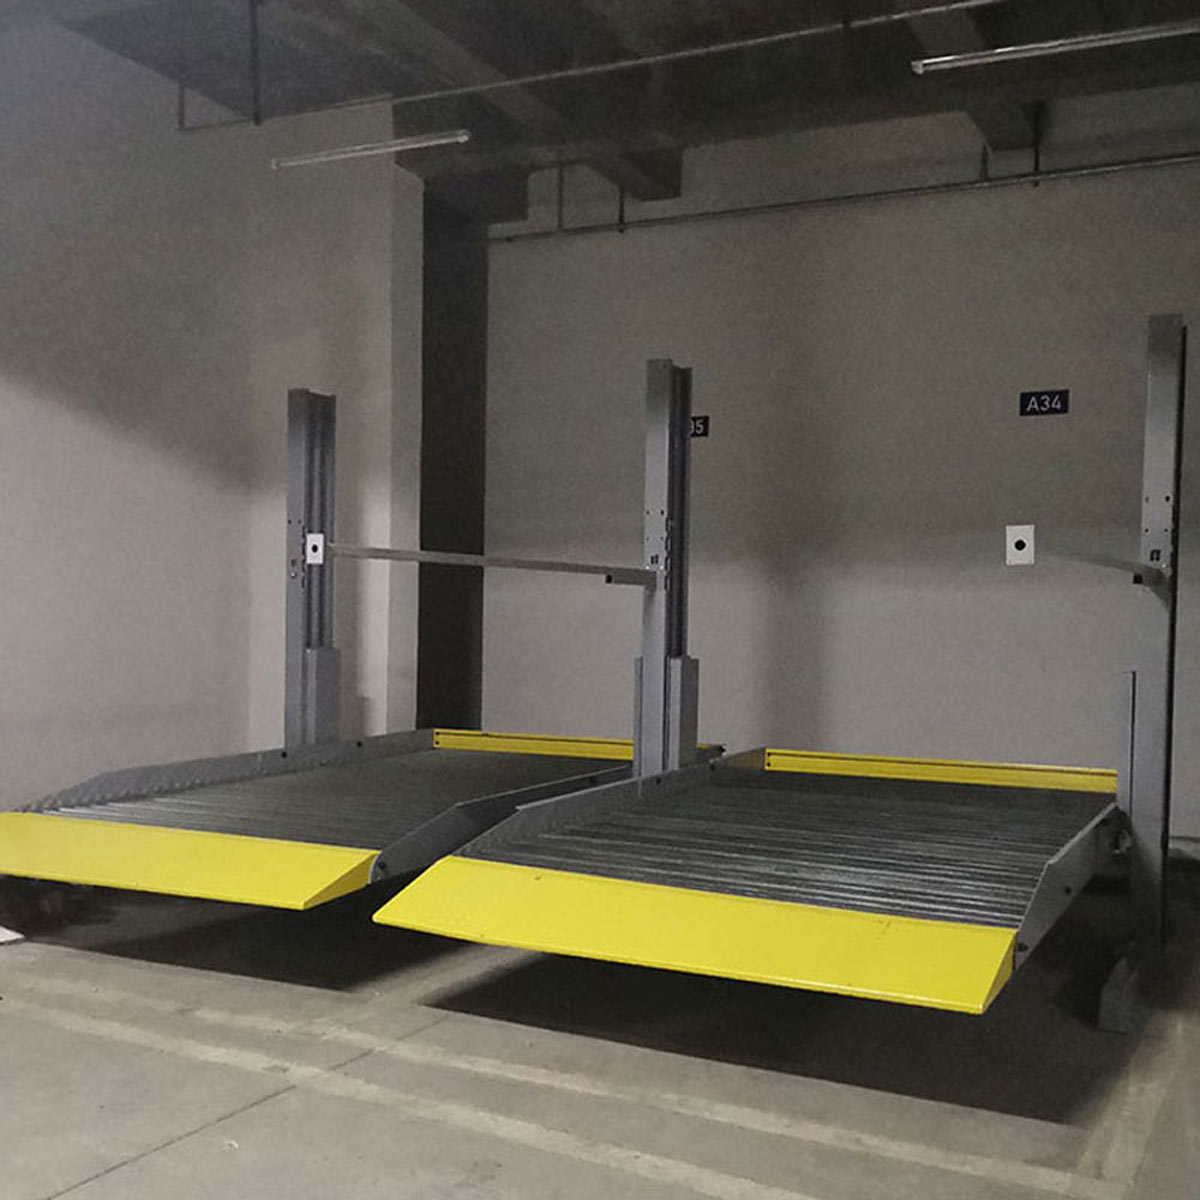 澄城自動化停車庫的設計思路